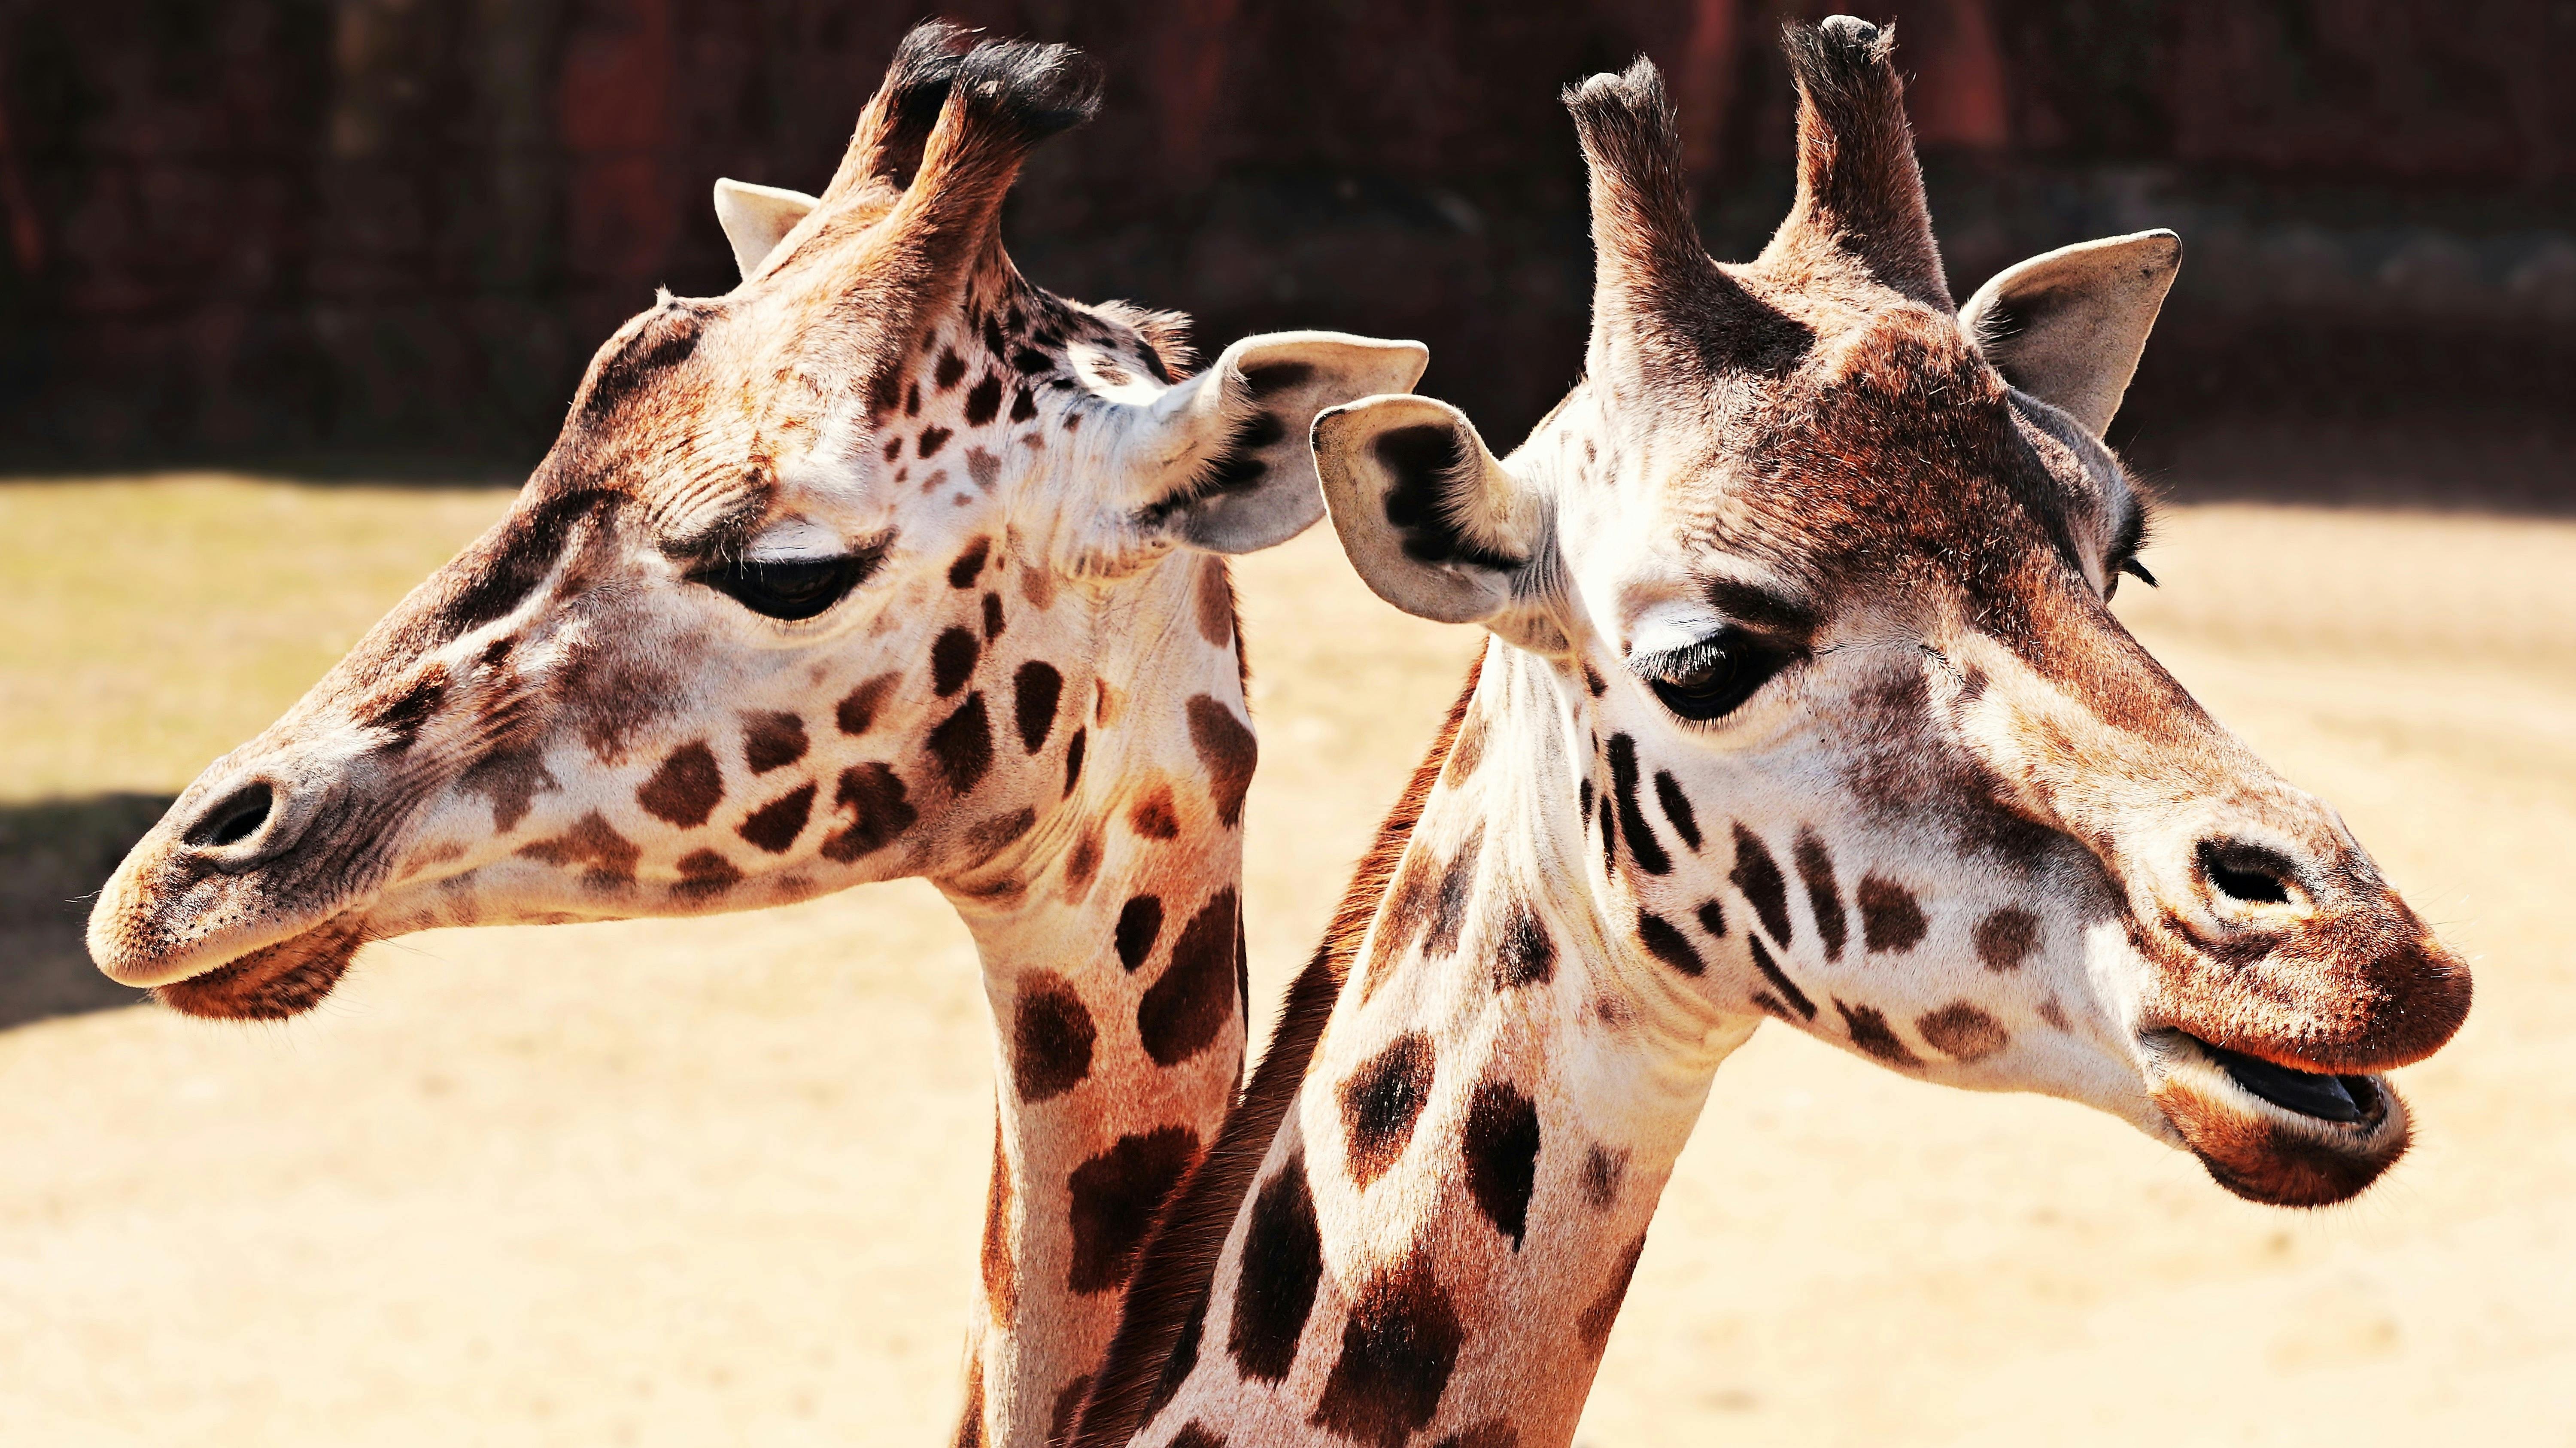 Close-Up Photography of Giraffe · Free Stock Photo - 6000 x 3372 jpeg 2934kB